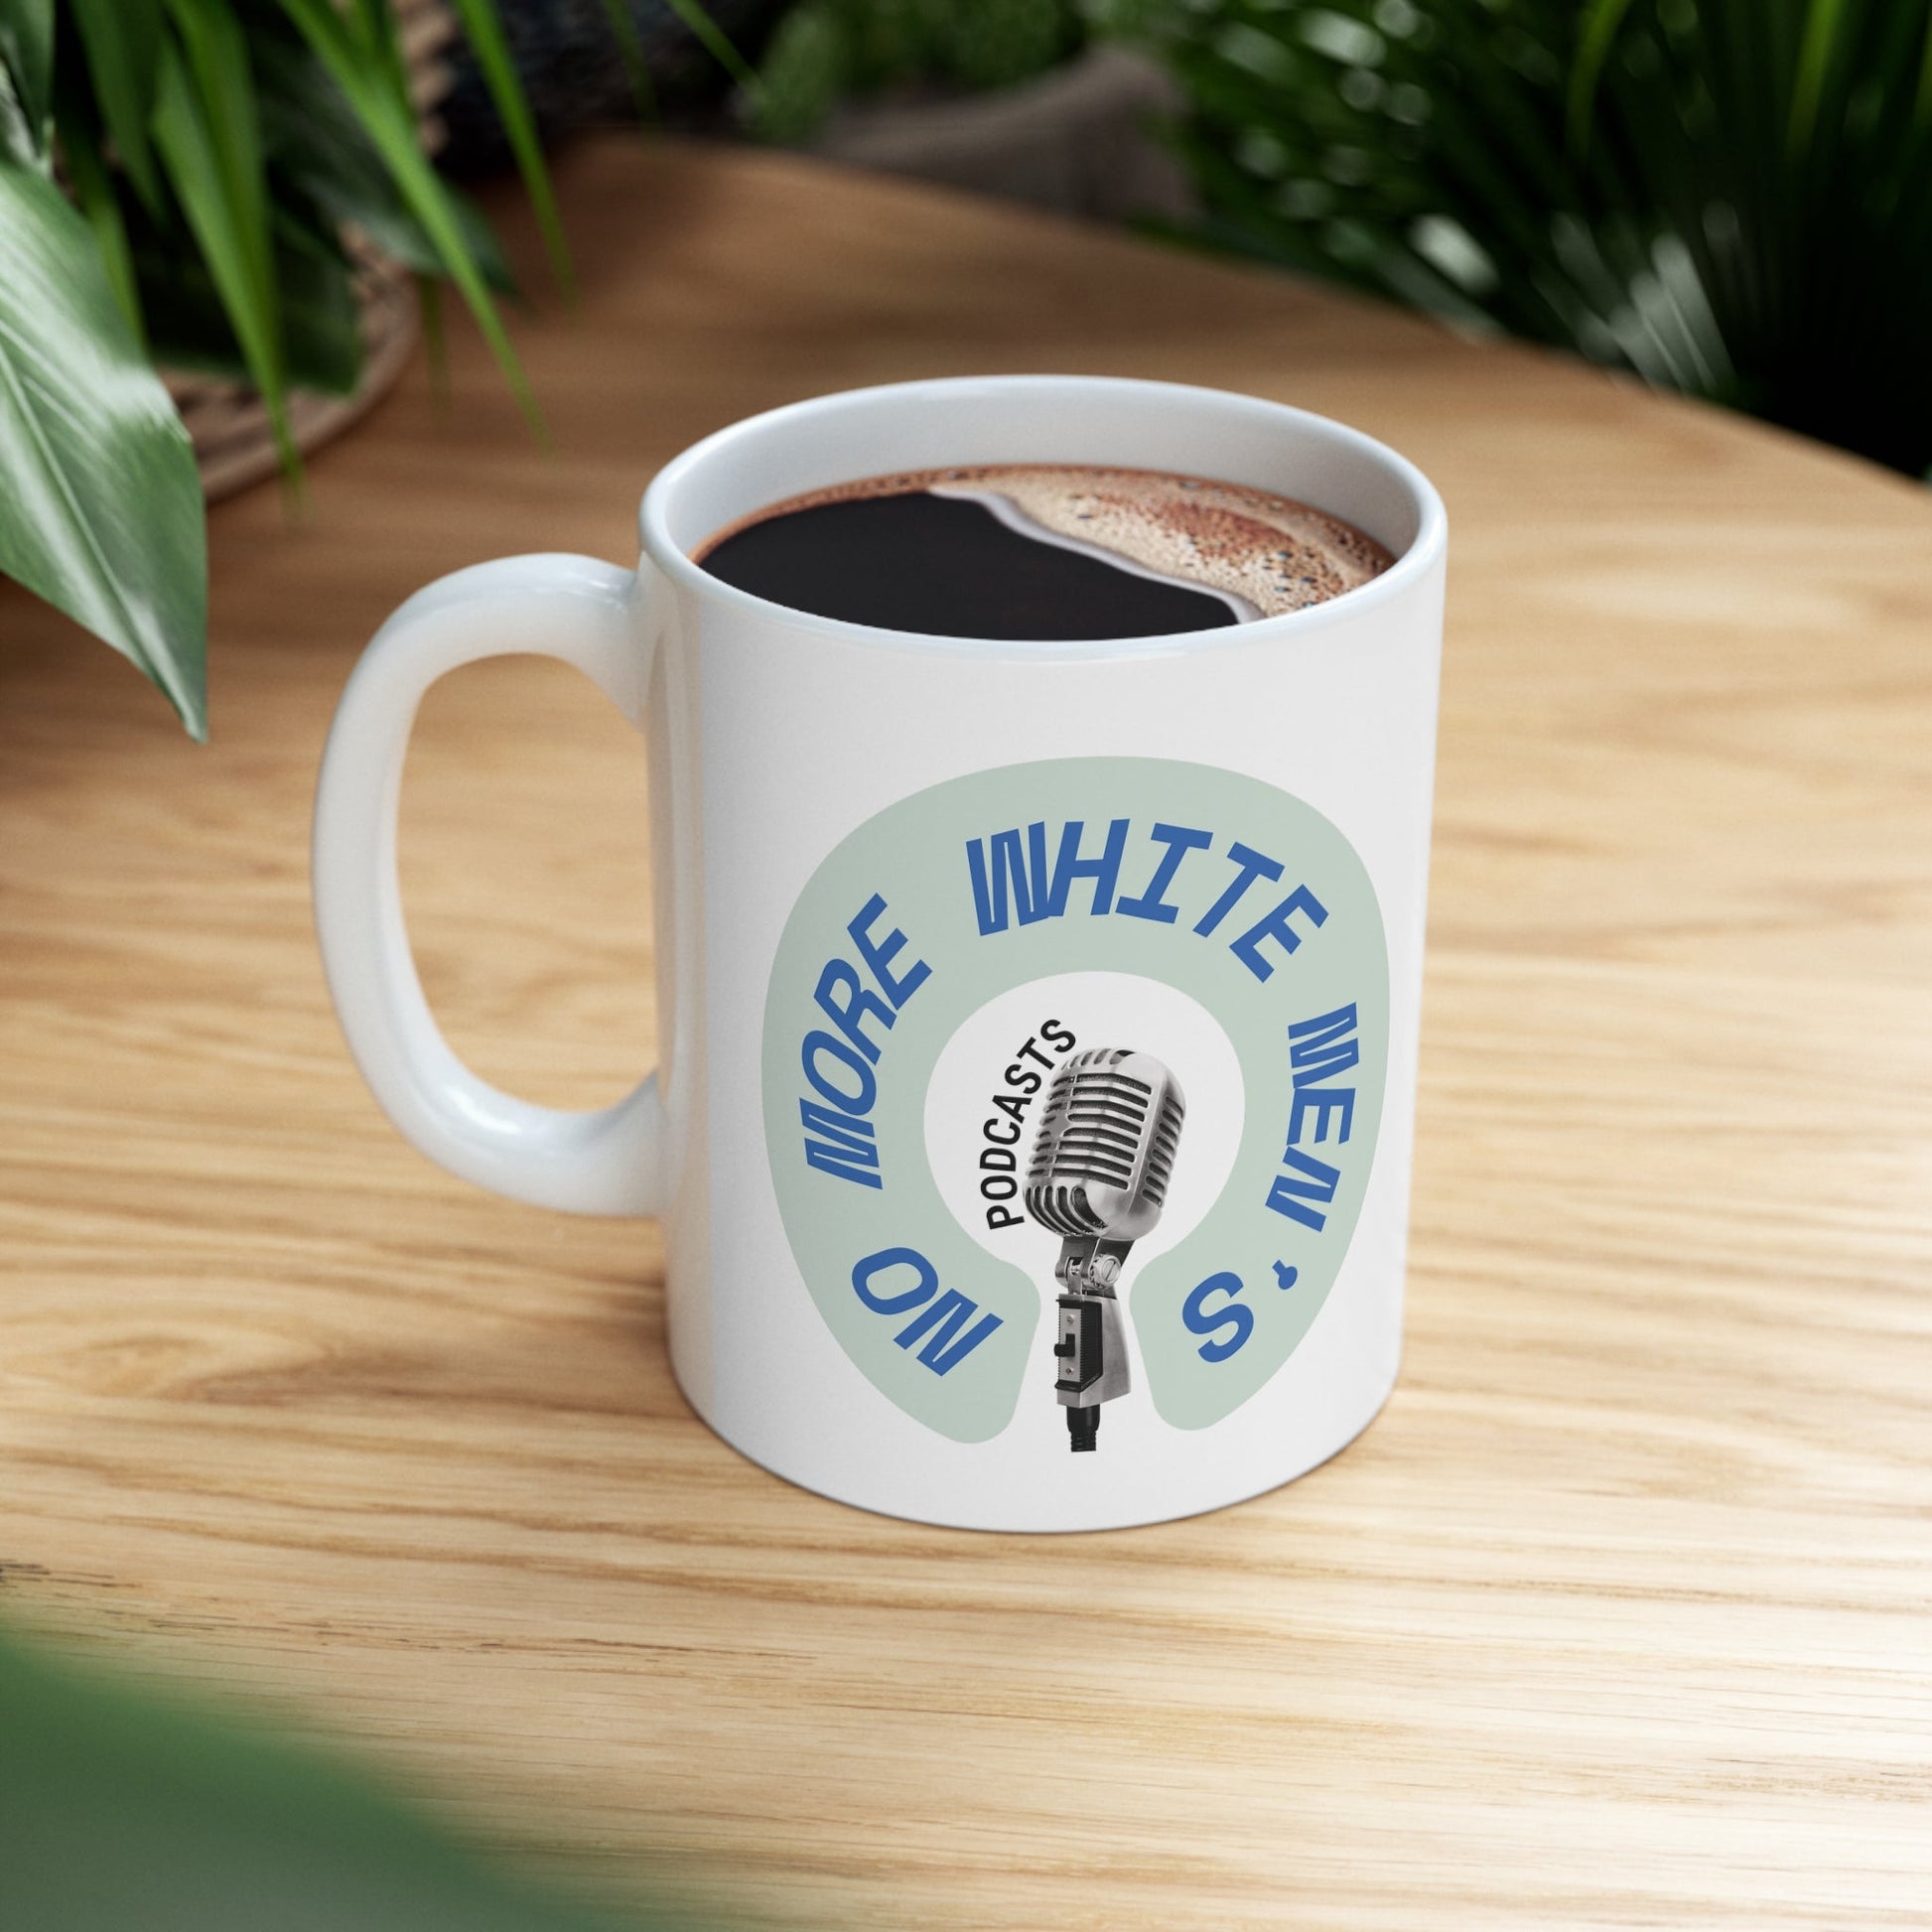 No More White Men's Podcasts Ceramic Mug 11oz